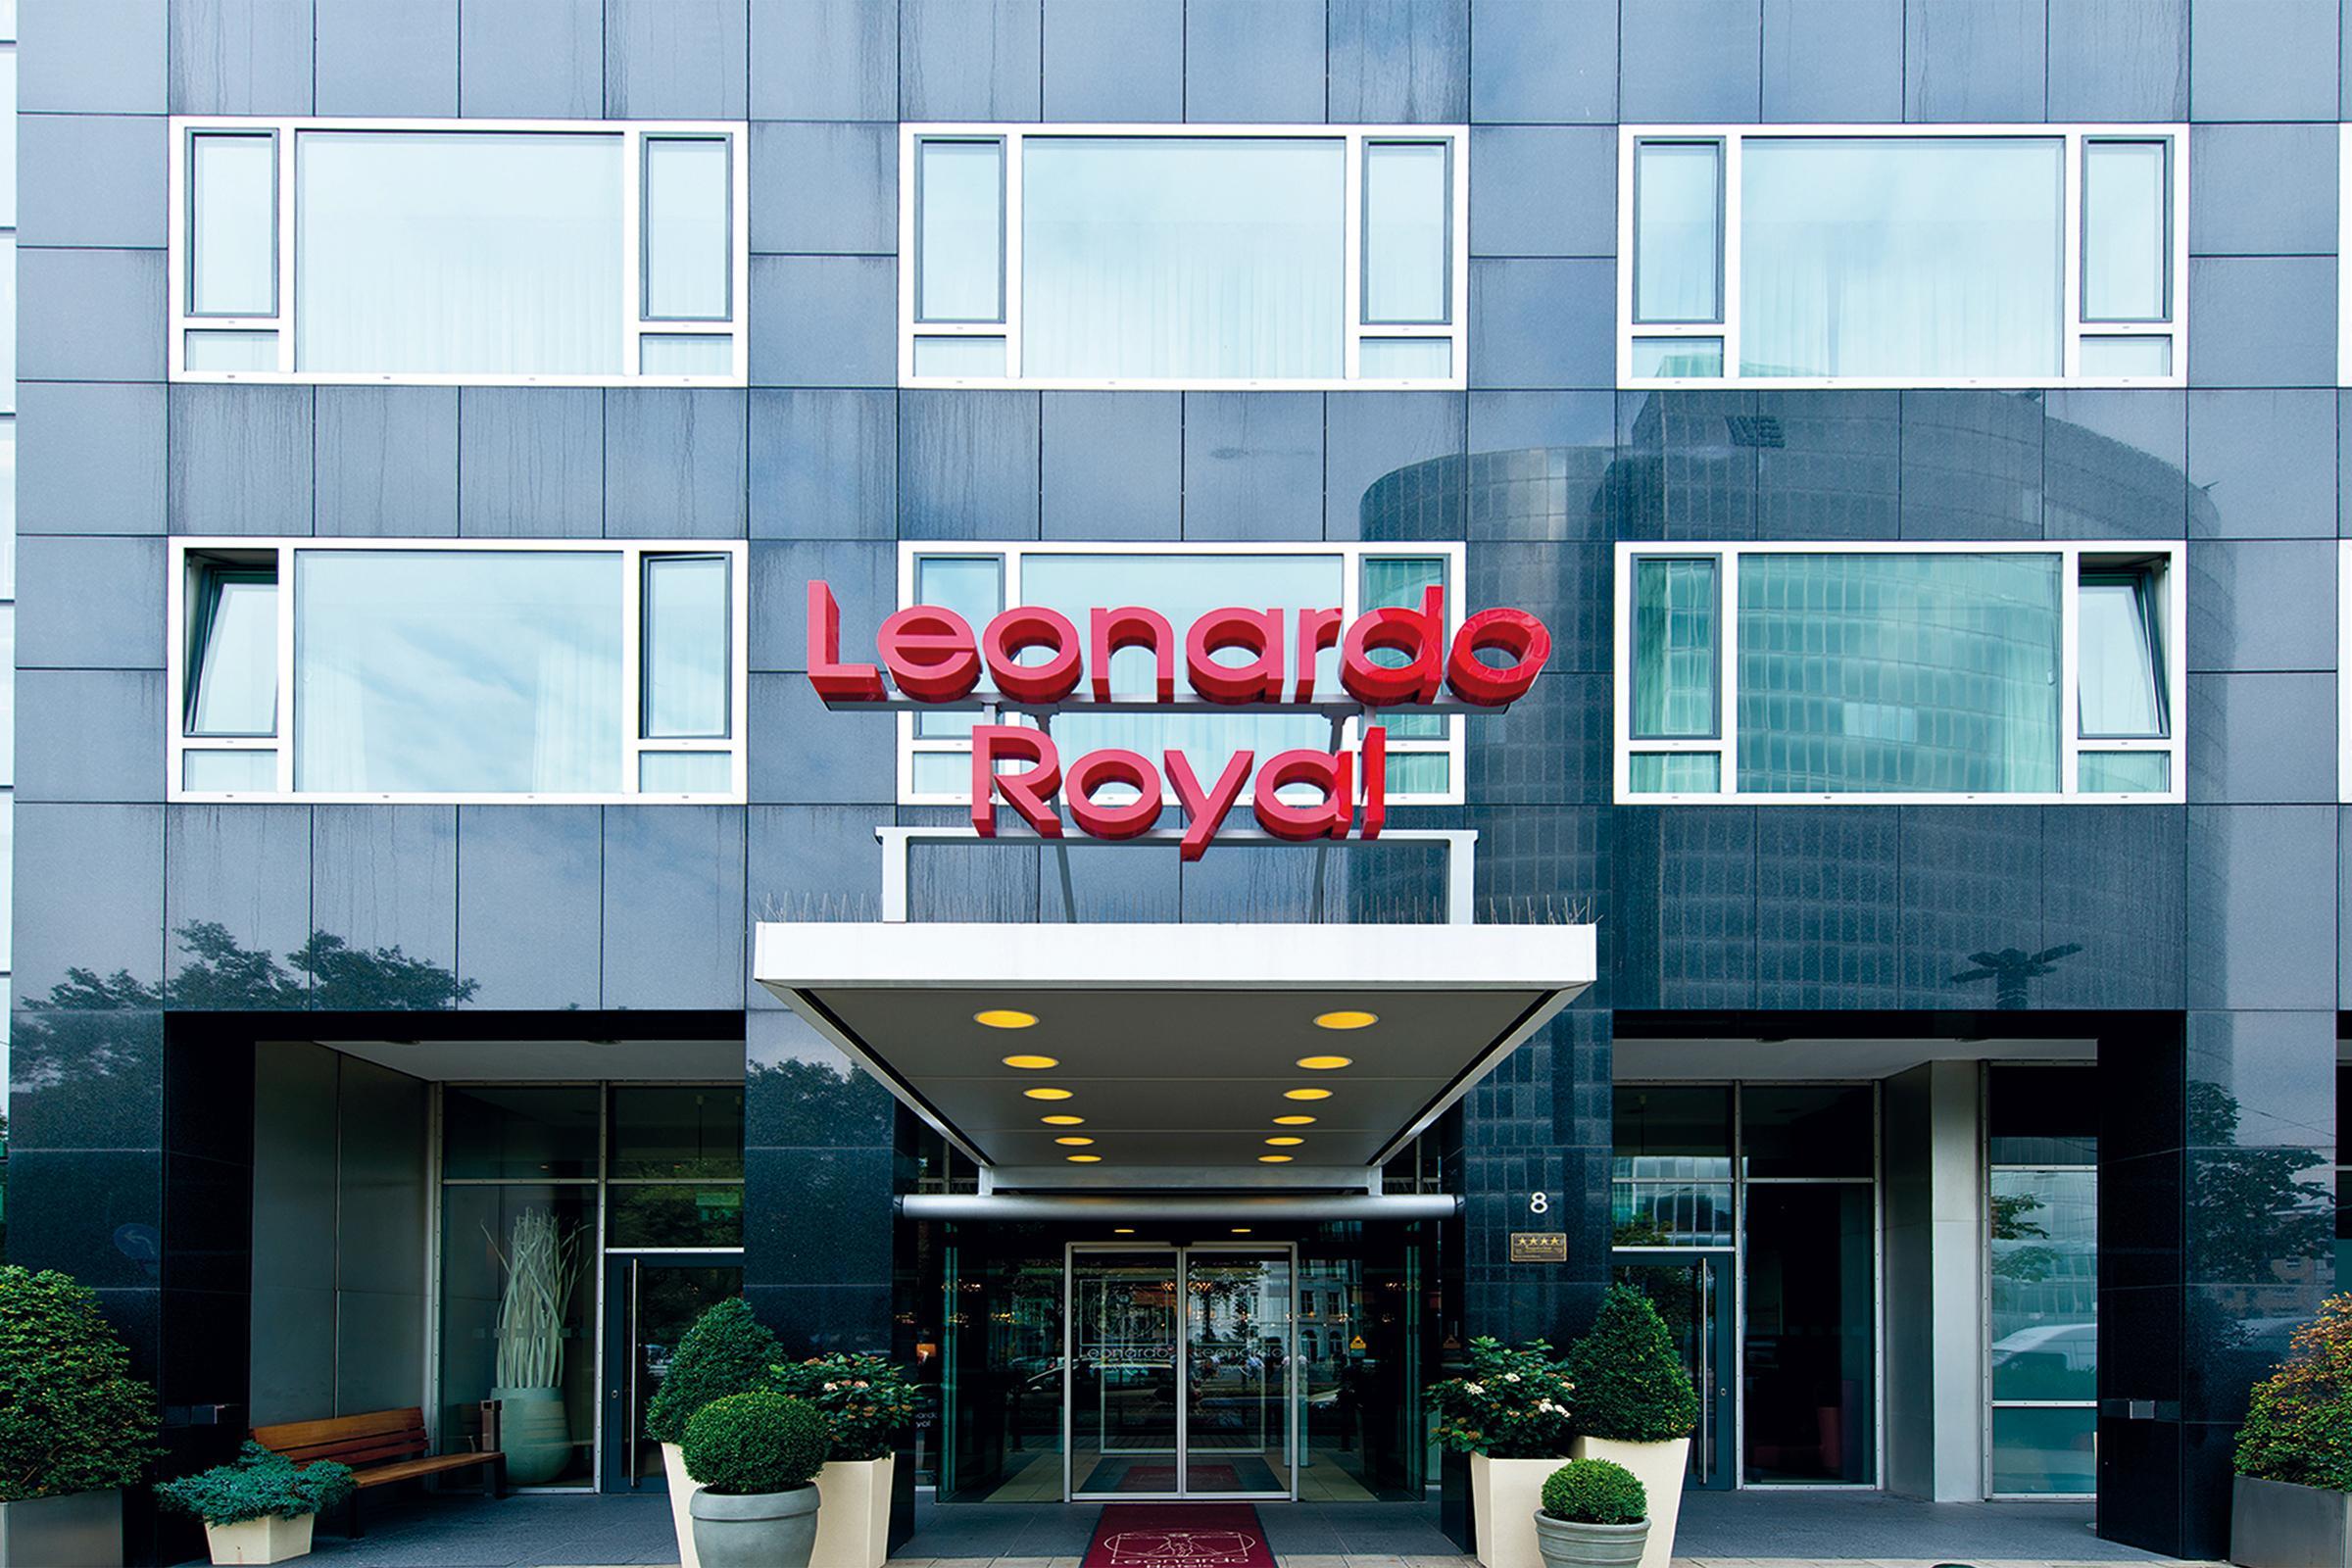 Leonardo Royal Hotel Dusseldorf Konigsallee Экстерьер фото